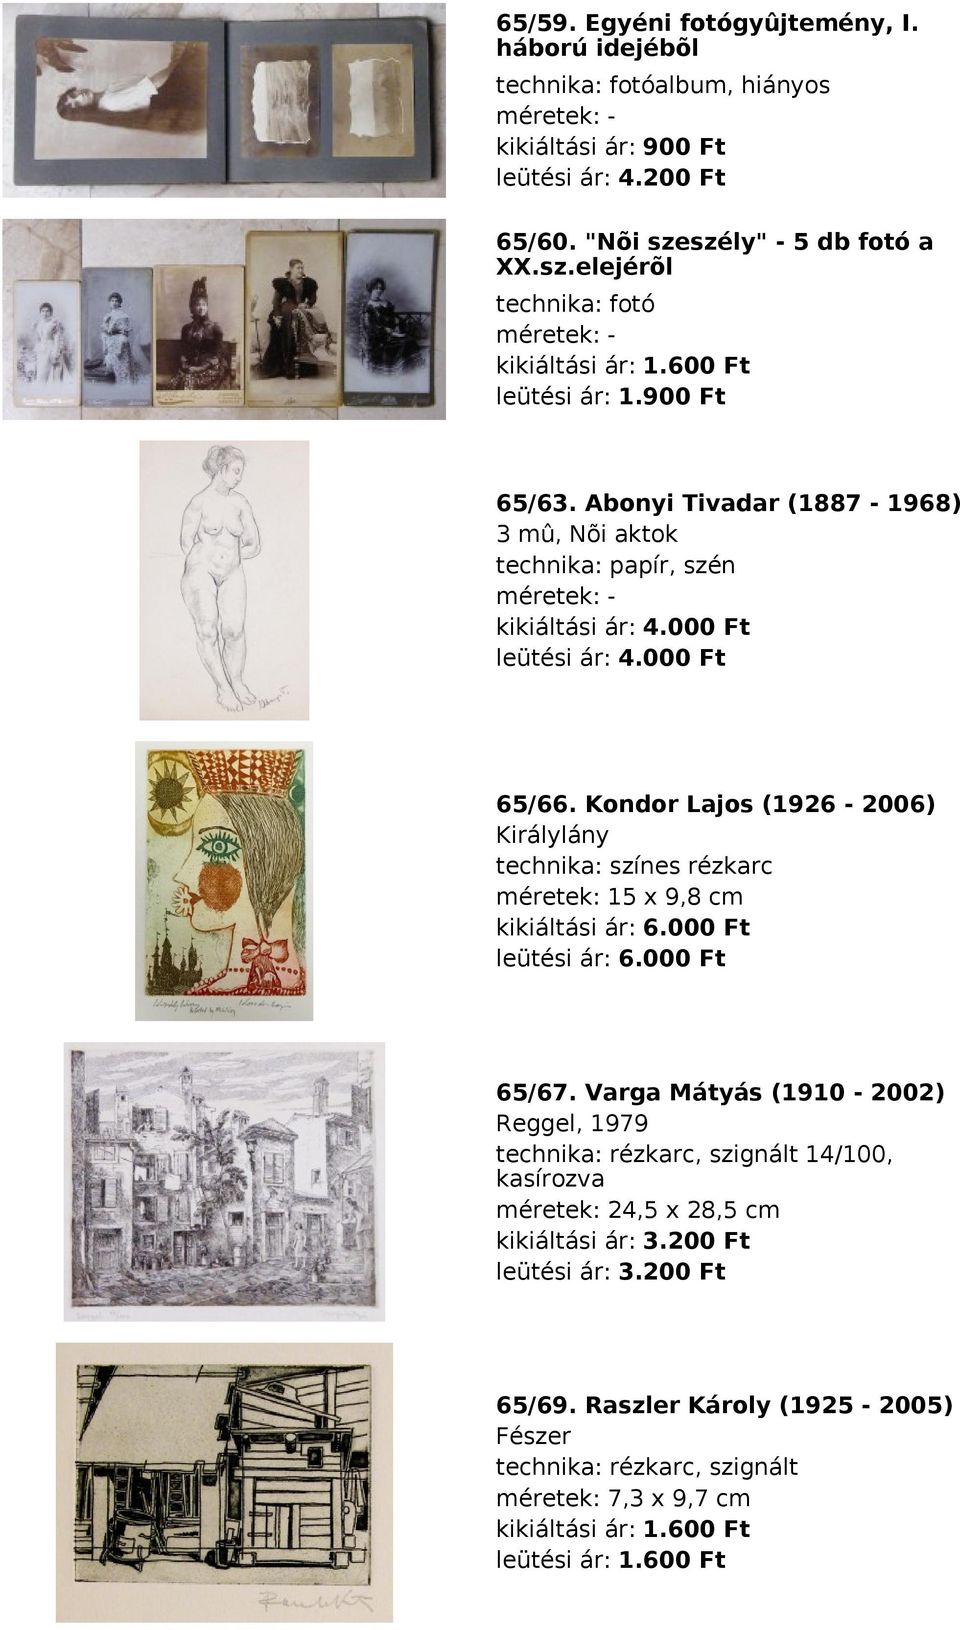 Kondor Lajos (1926-2006) Királylány technika: színes rézkarc méretek: 15 x 9,8 cm kikiáltási ár: 6.000 Ft leütési ár: 6.000 Ft 65/67.